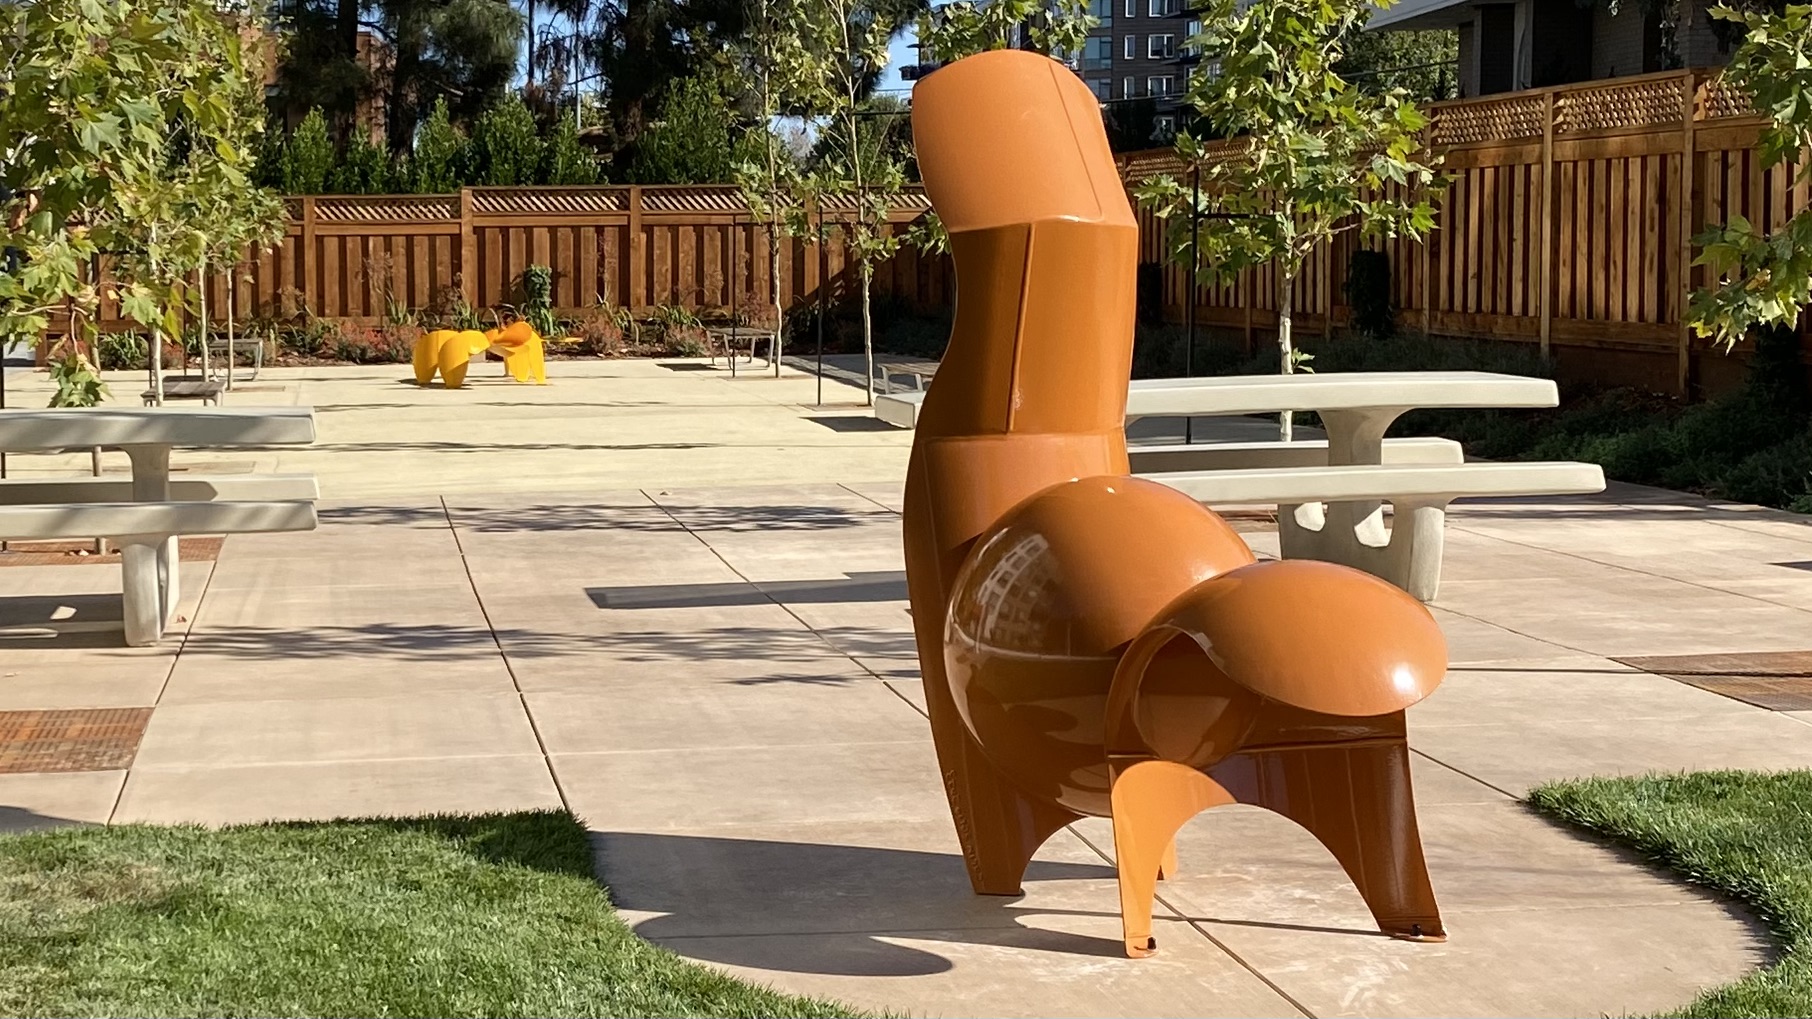 Squirrels and Lizard interactive sculptures